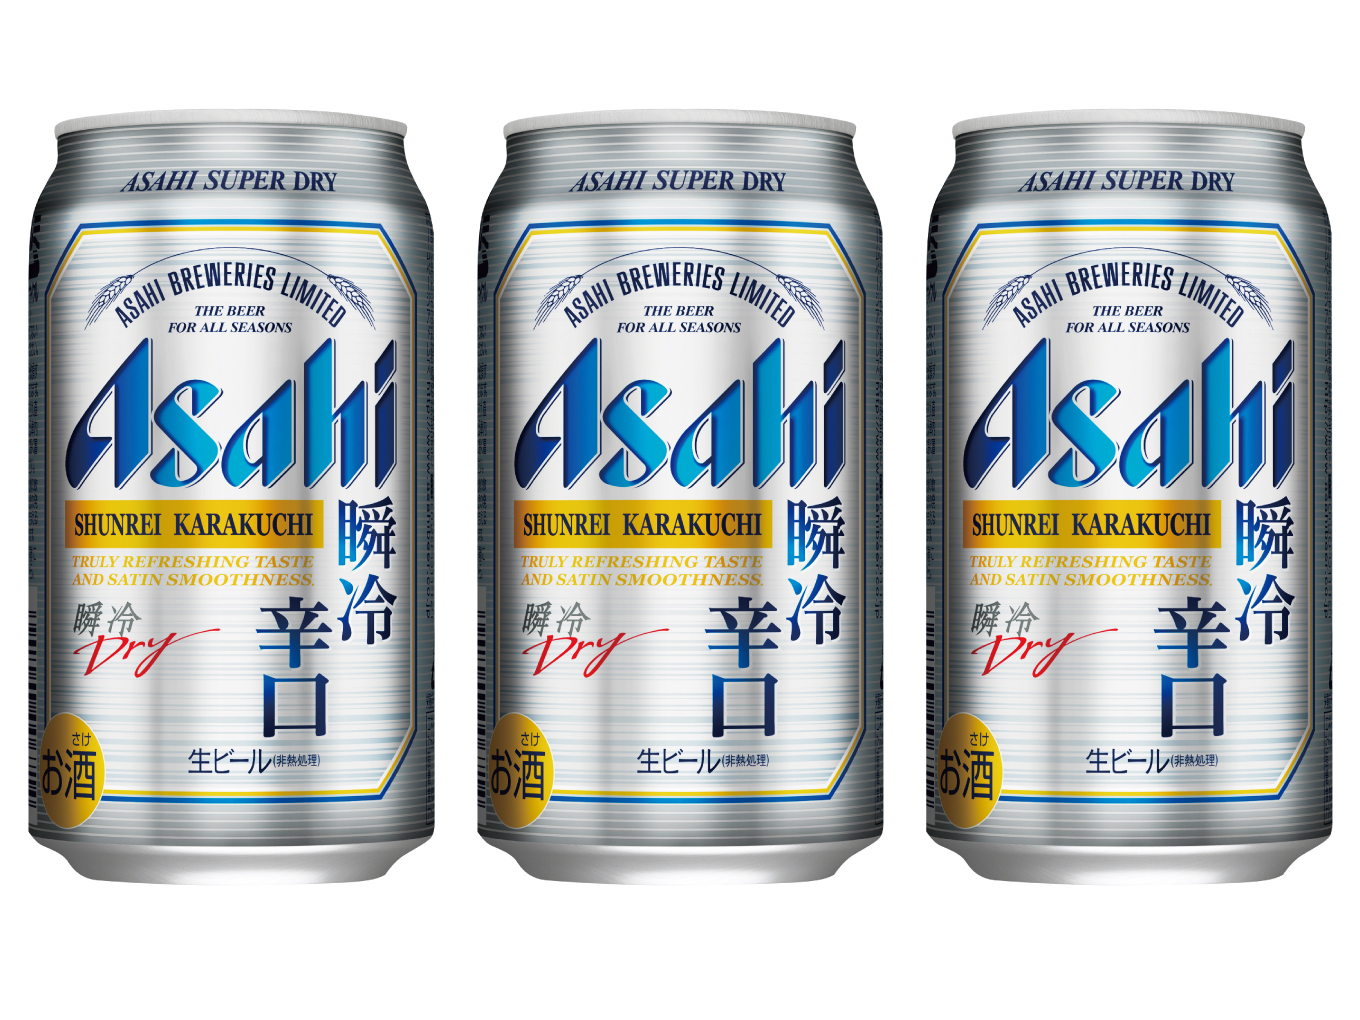 期間限定で発売された貴重なビール アサヒスーパードライ 瞬冷辛口 プレゼント ５名 ビズスタ福岡版